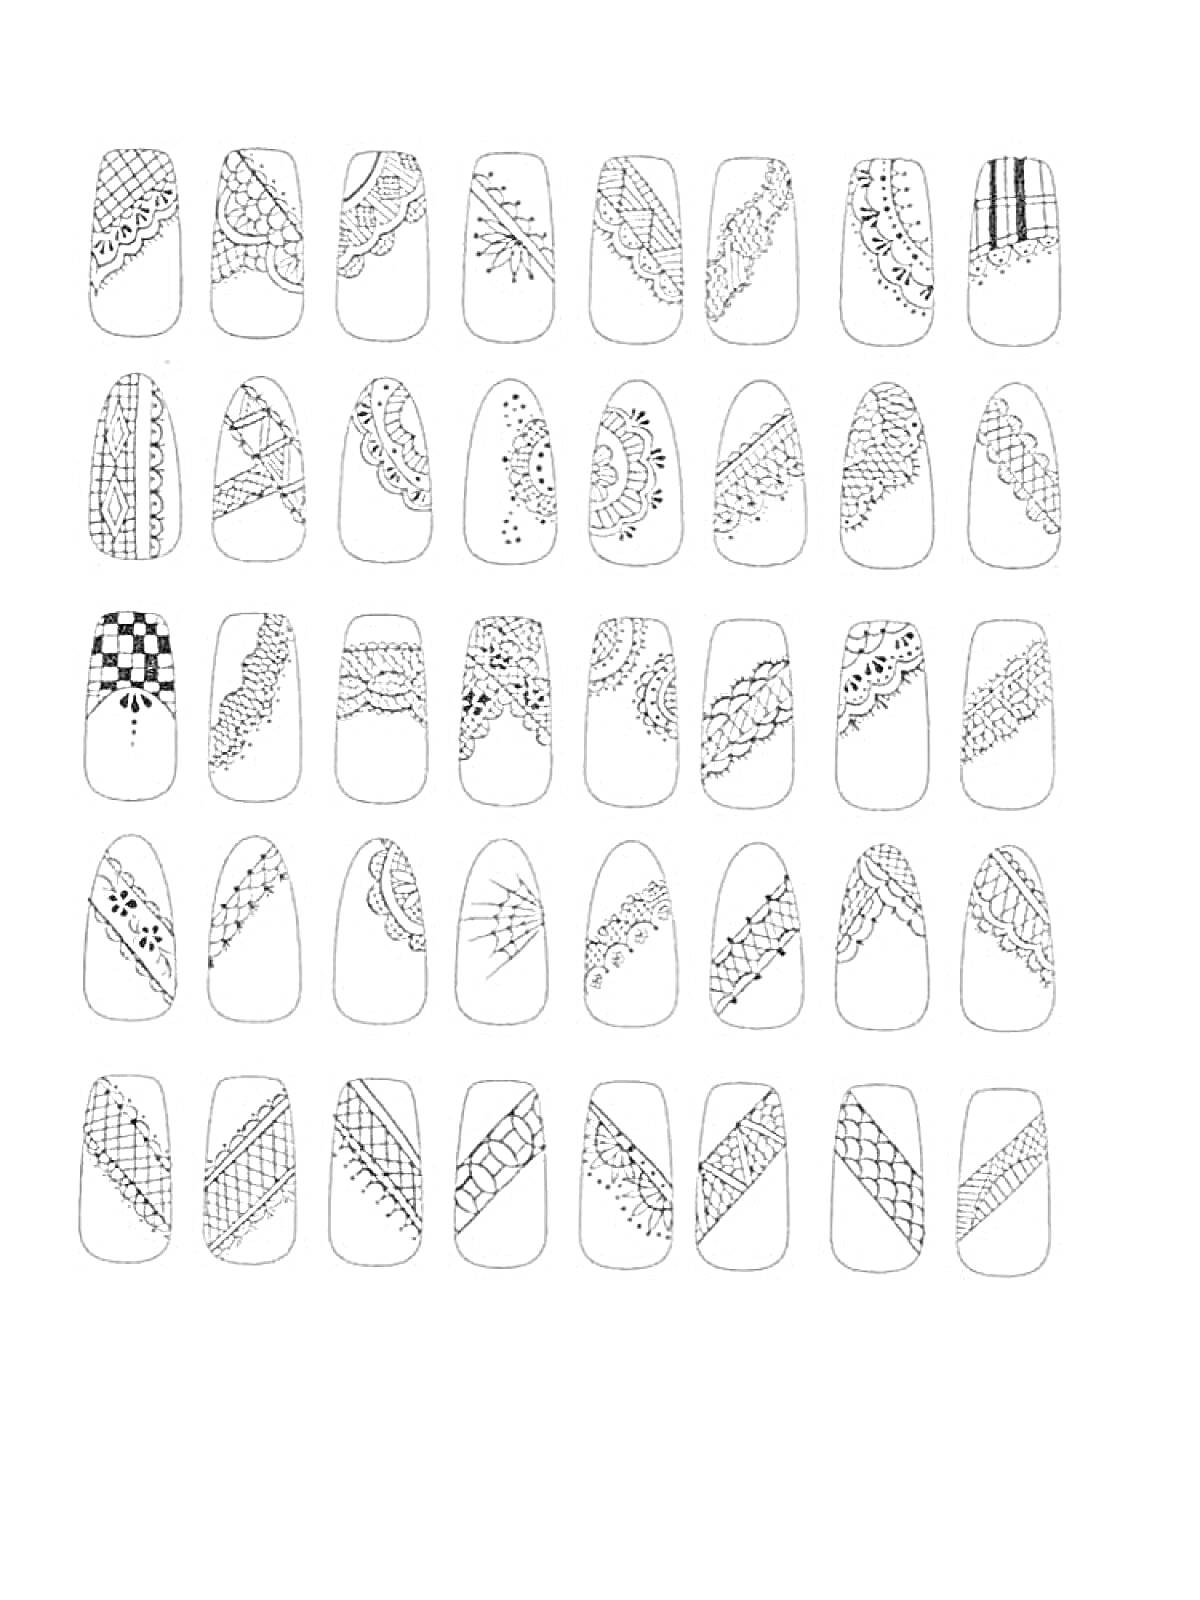 Дизайны для ногтей: узоры, линии, точки, сетки, кружевные элементы, геометрические формы